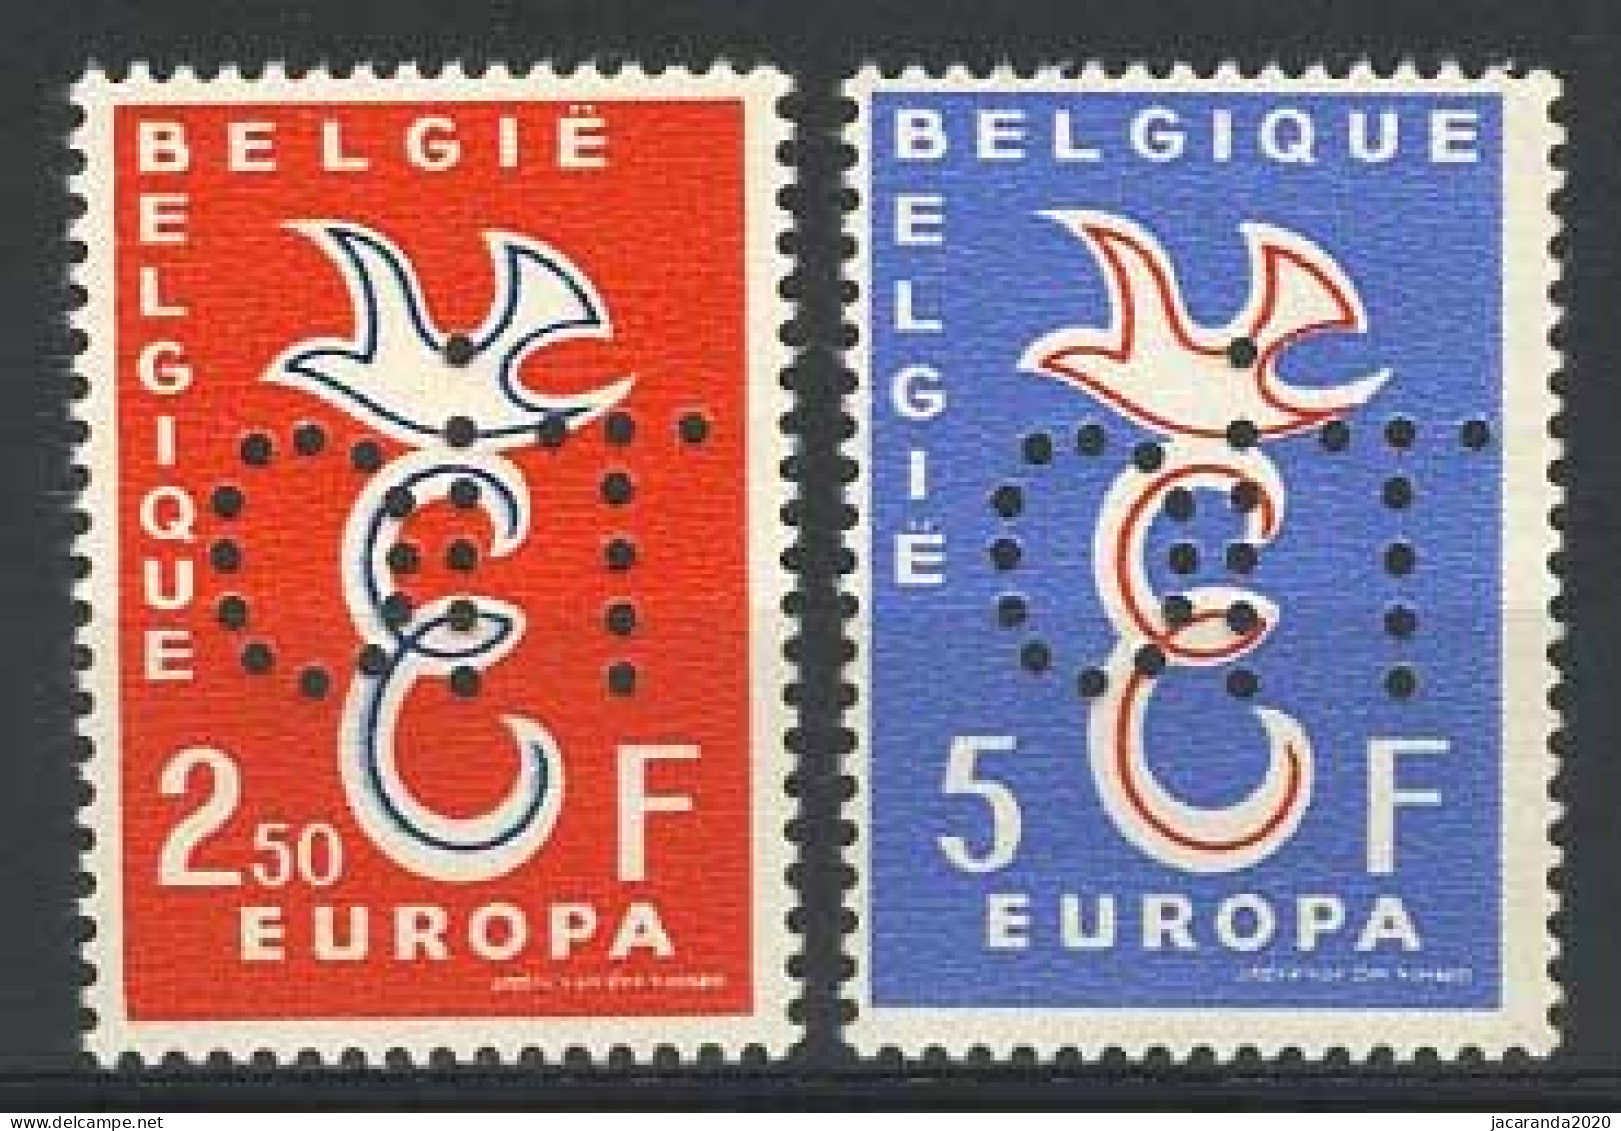 België PR133/34 ** - Europa 1958 - 40 Jaar IAO - Europazegels Geperforeerd Met OIT - Privat- Und Lokalpost [PR & LO]